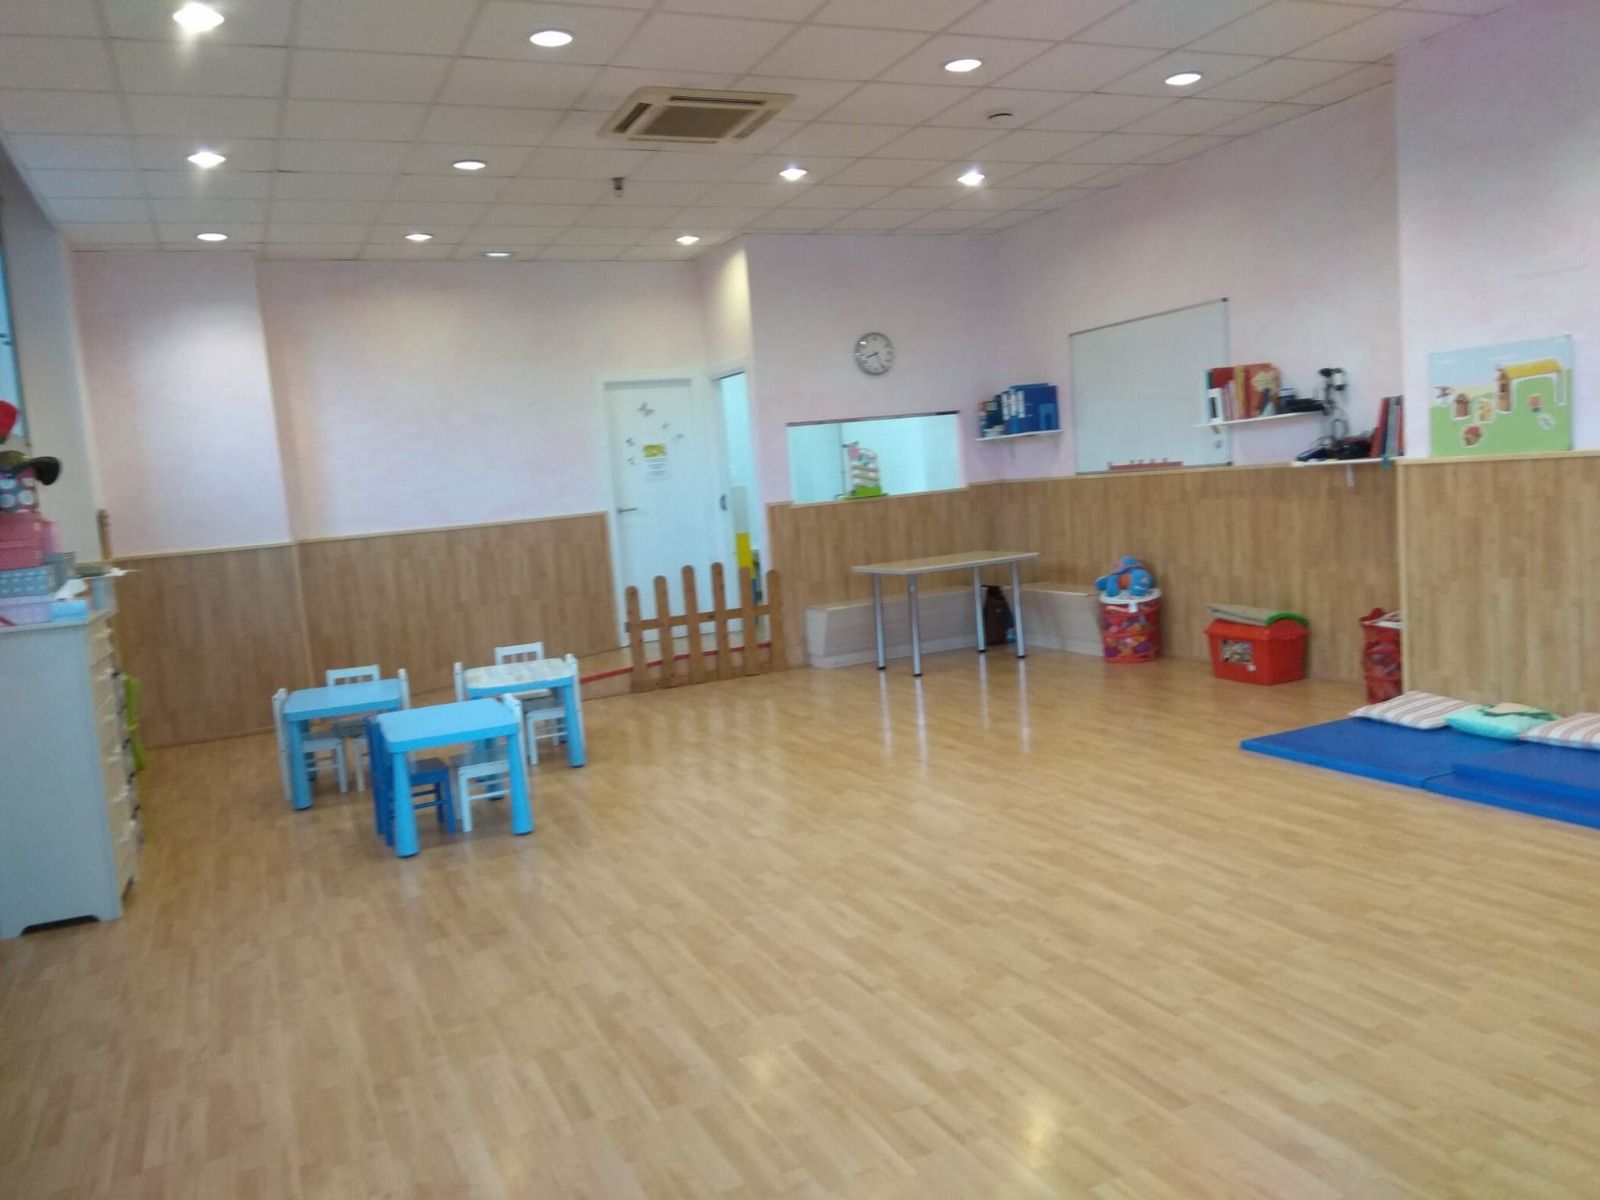 Aula d'Afind Kindergarten Sant Cugat, espai de criança infantil amb immersió lingüística en alemany. FOTO: Cedida